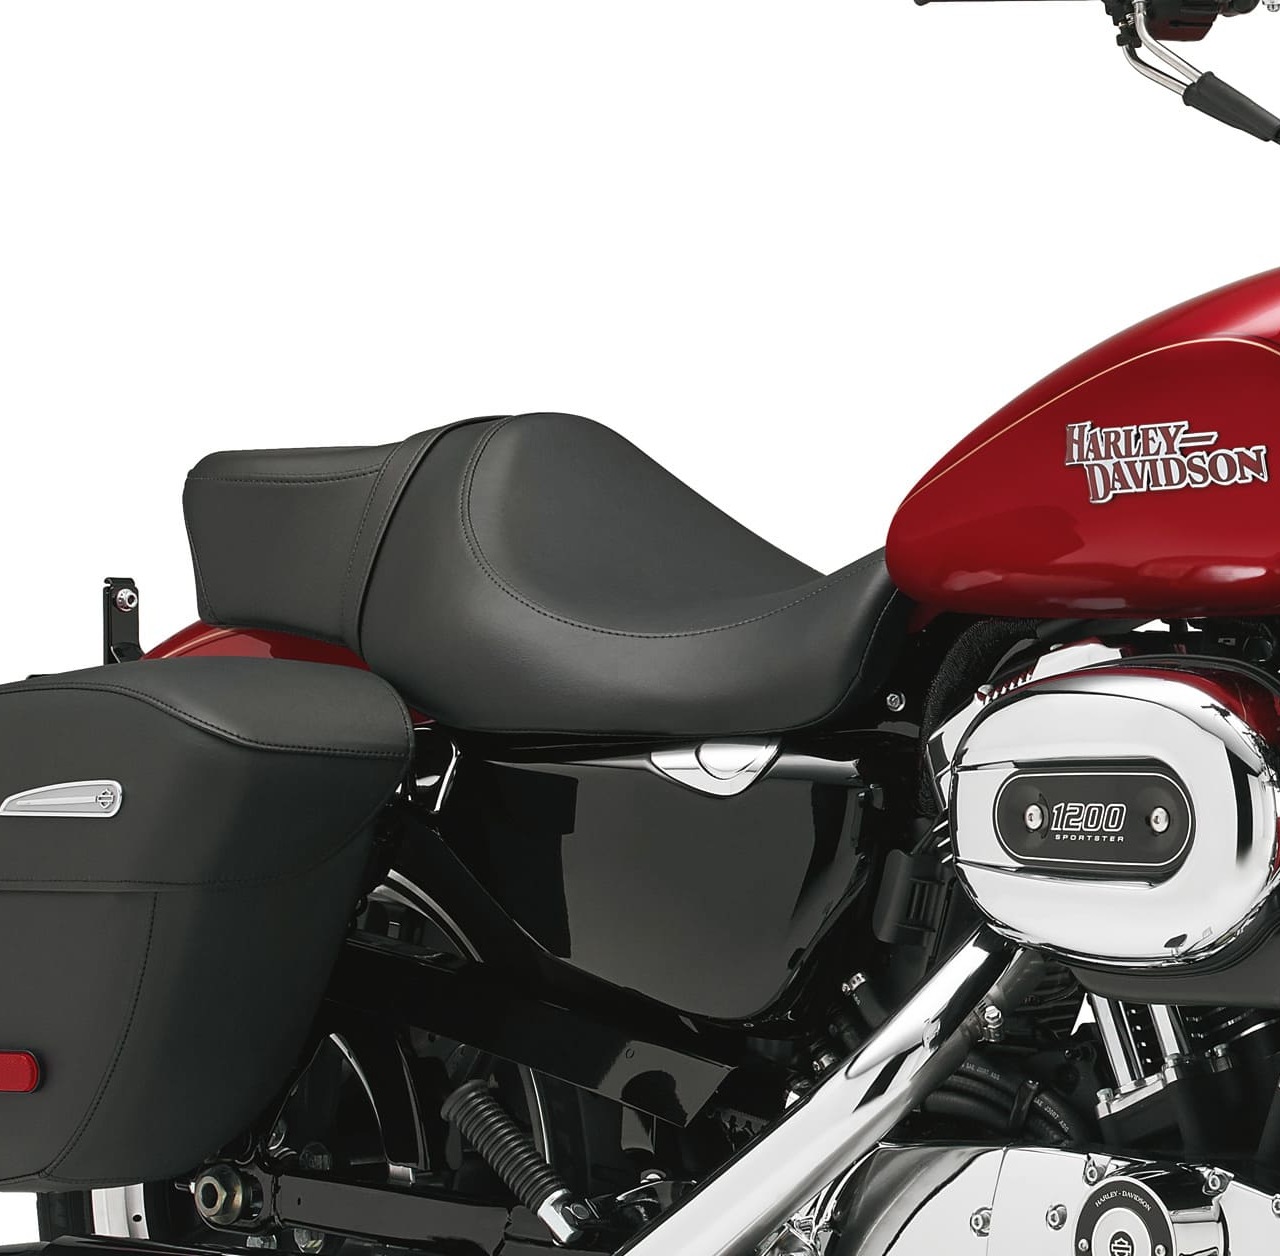 Harley-Davidson Sportster y accesorios en exhibición en las